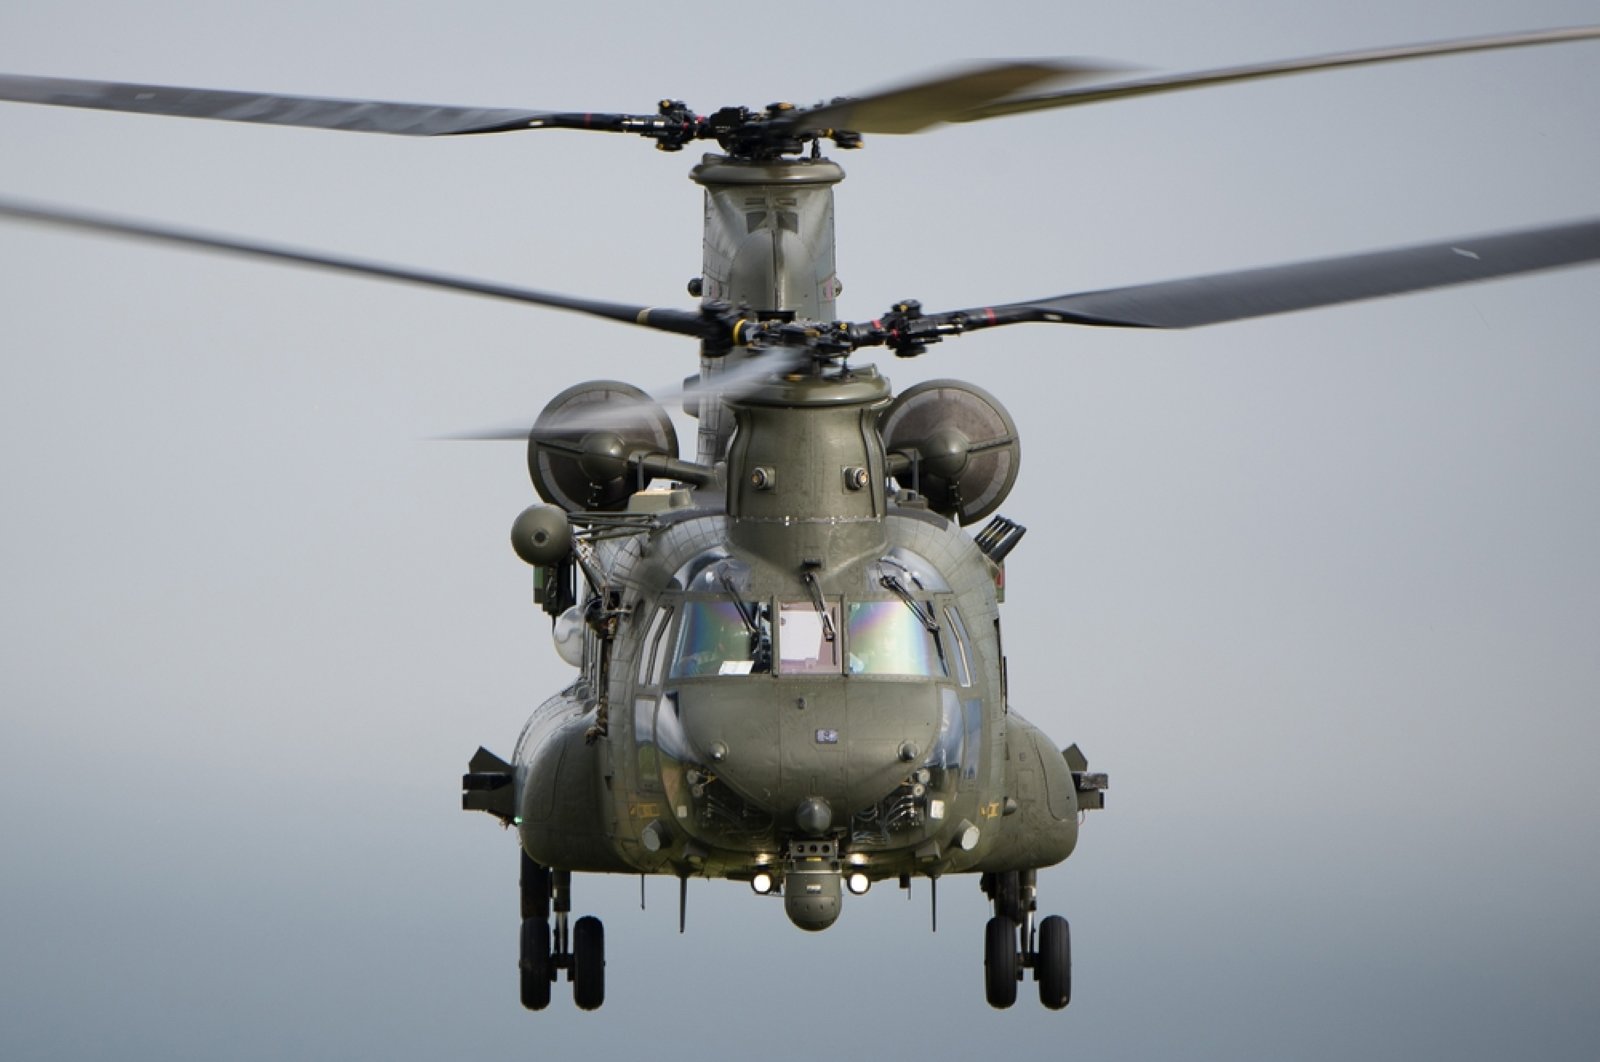 Filipina dalam pembicaraan untuk membeli helikopter AS setelah membatalkan kesepakatan Rusia